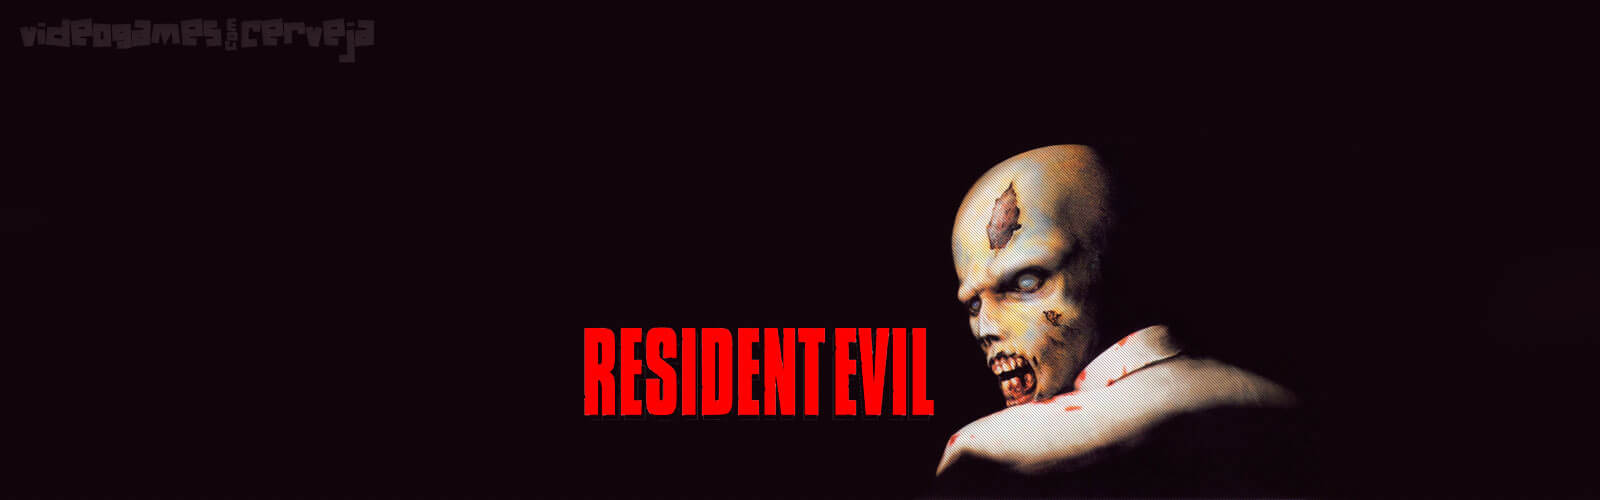 Análise - Resident Evil Cover